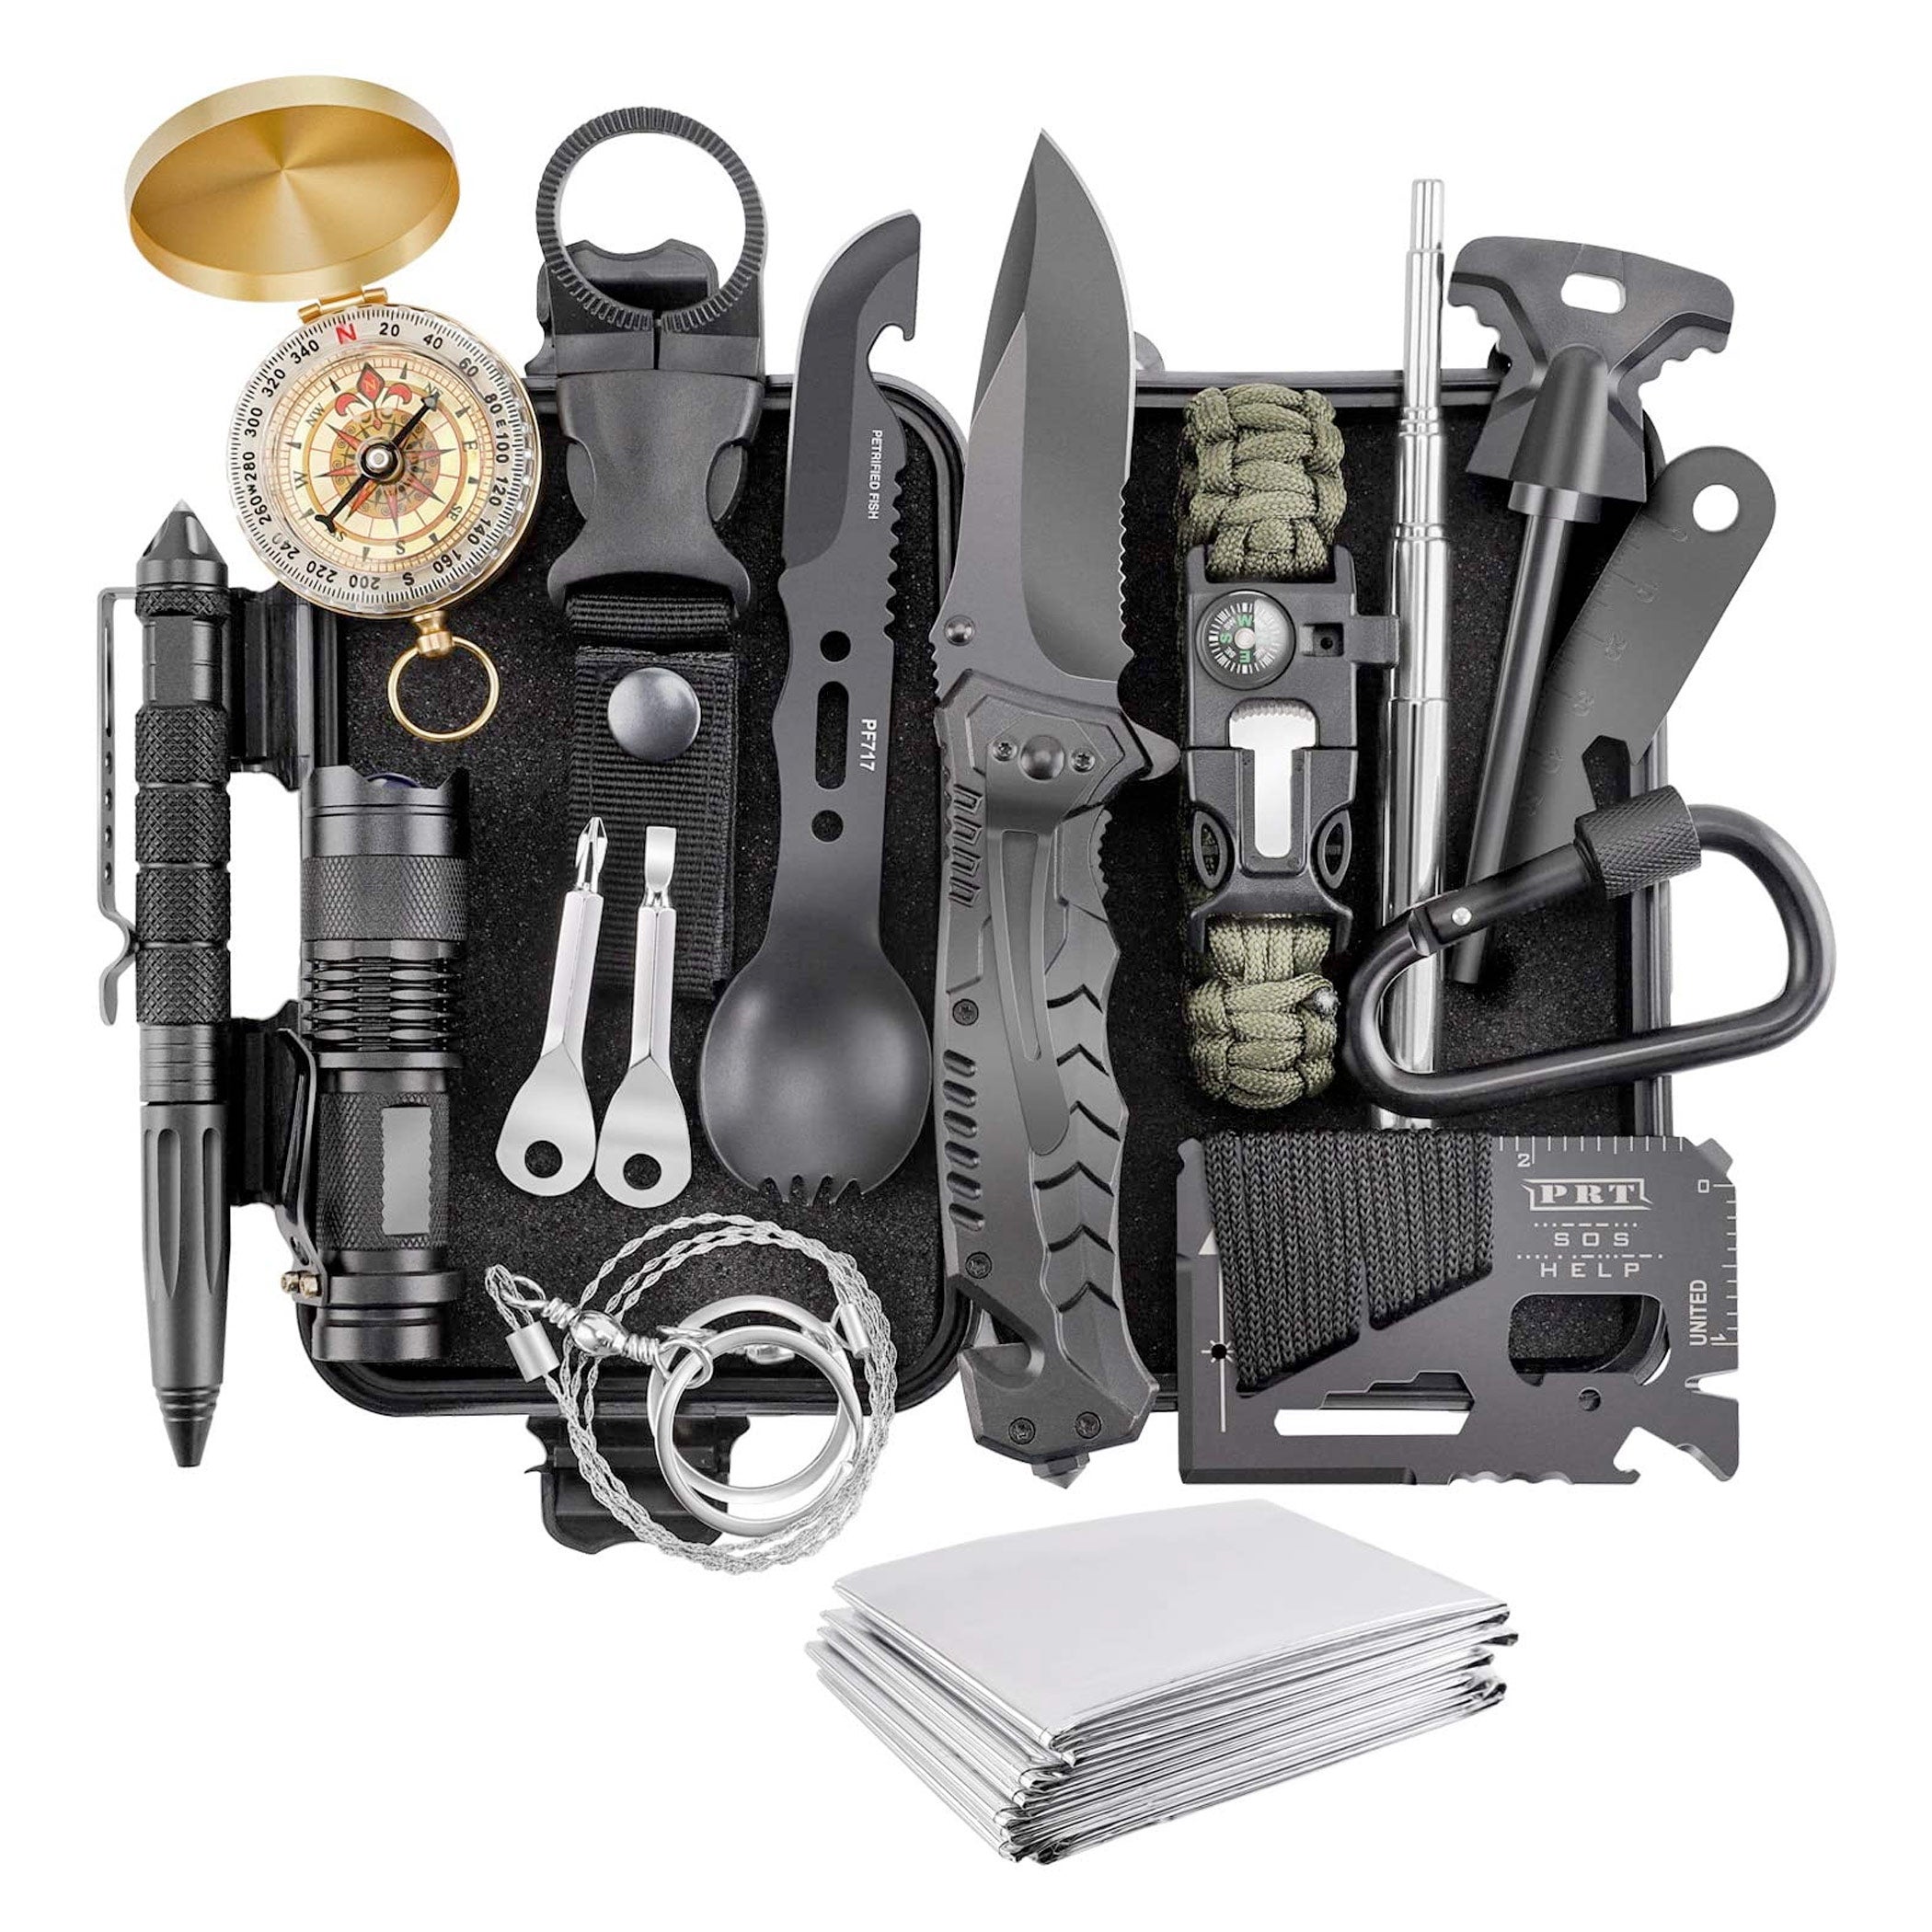 Verifygear 17-in-1 Professional Survival Gear Tool Emergency Kit